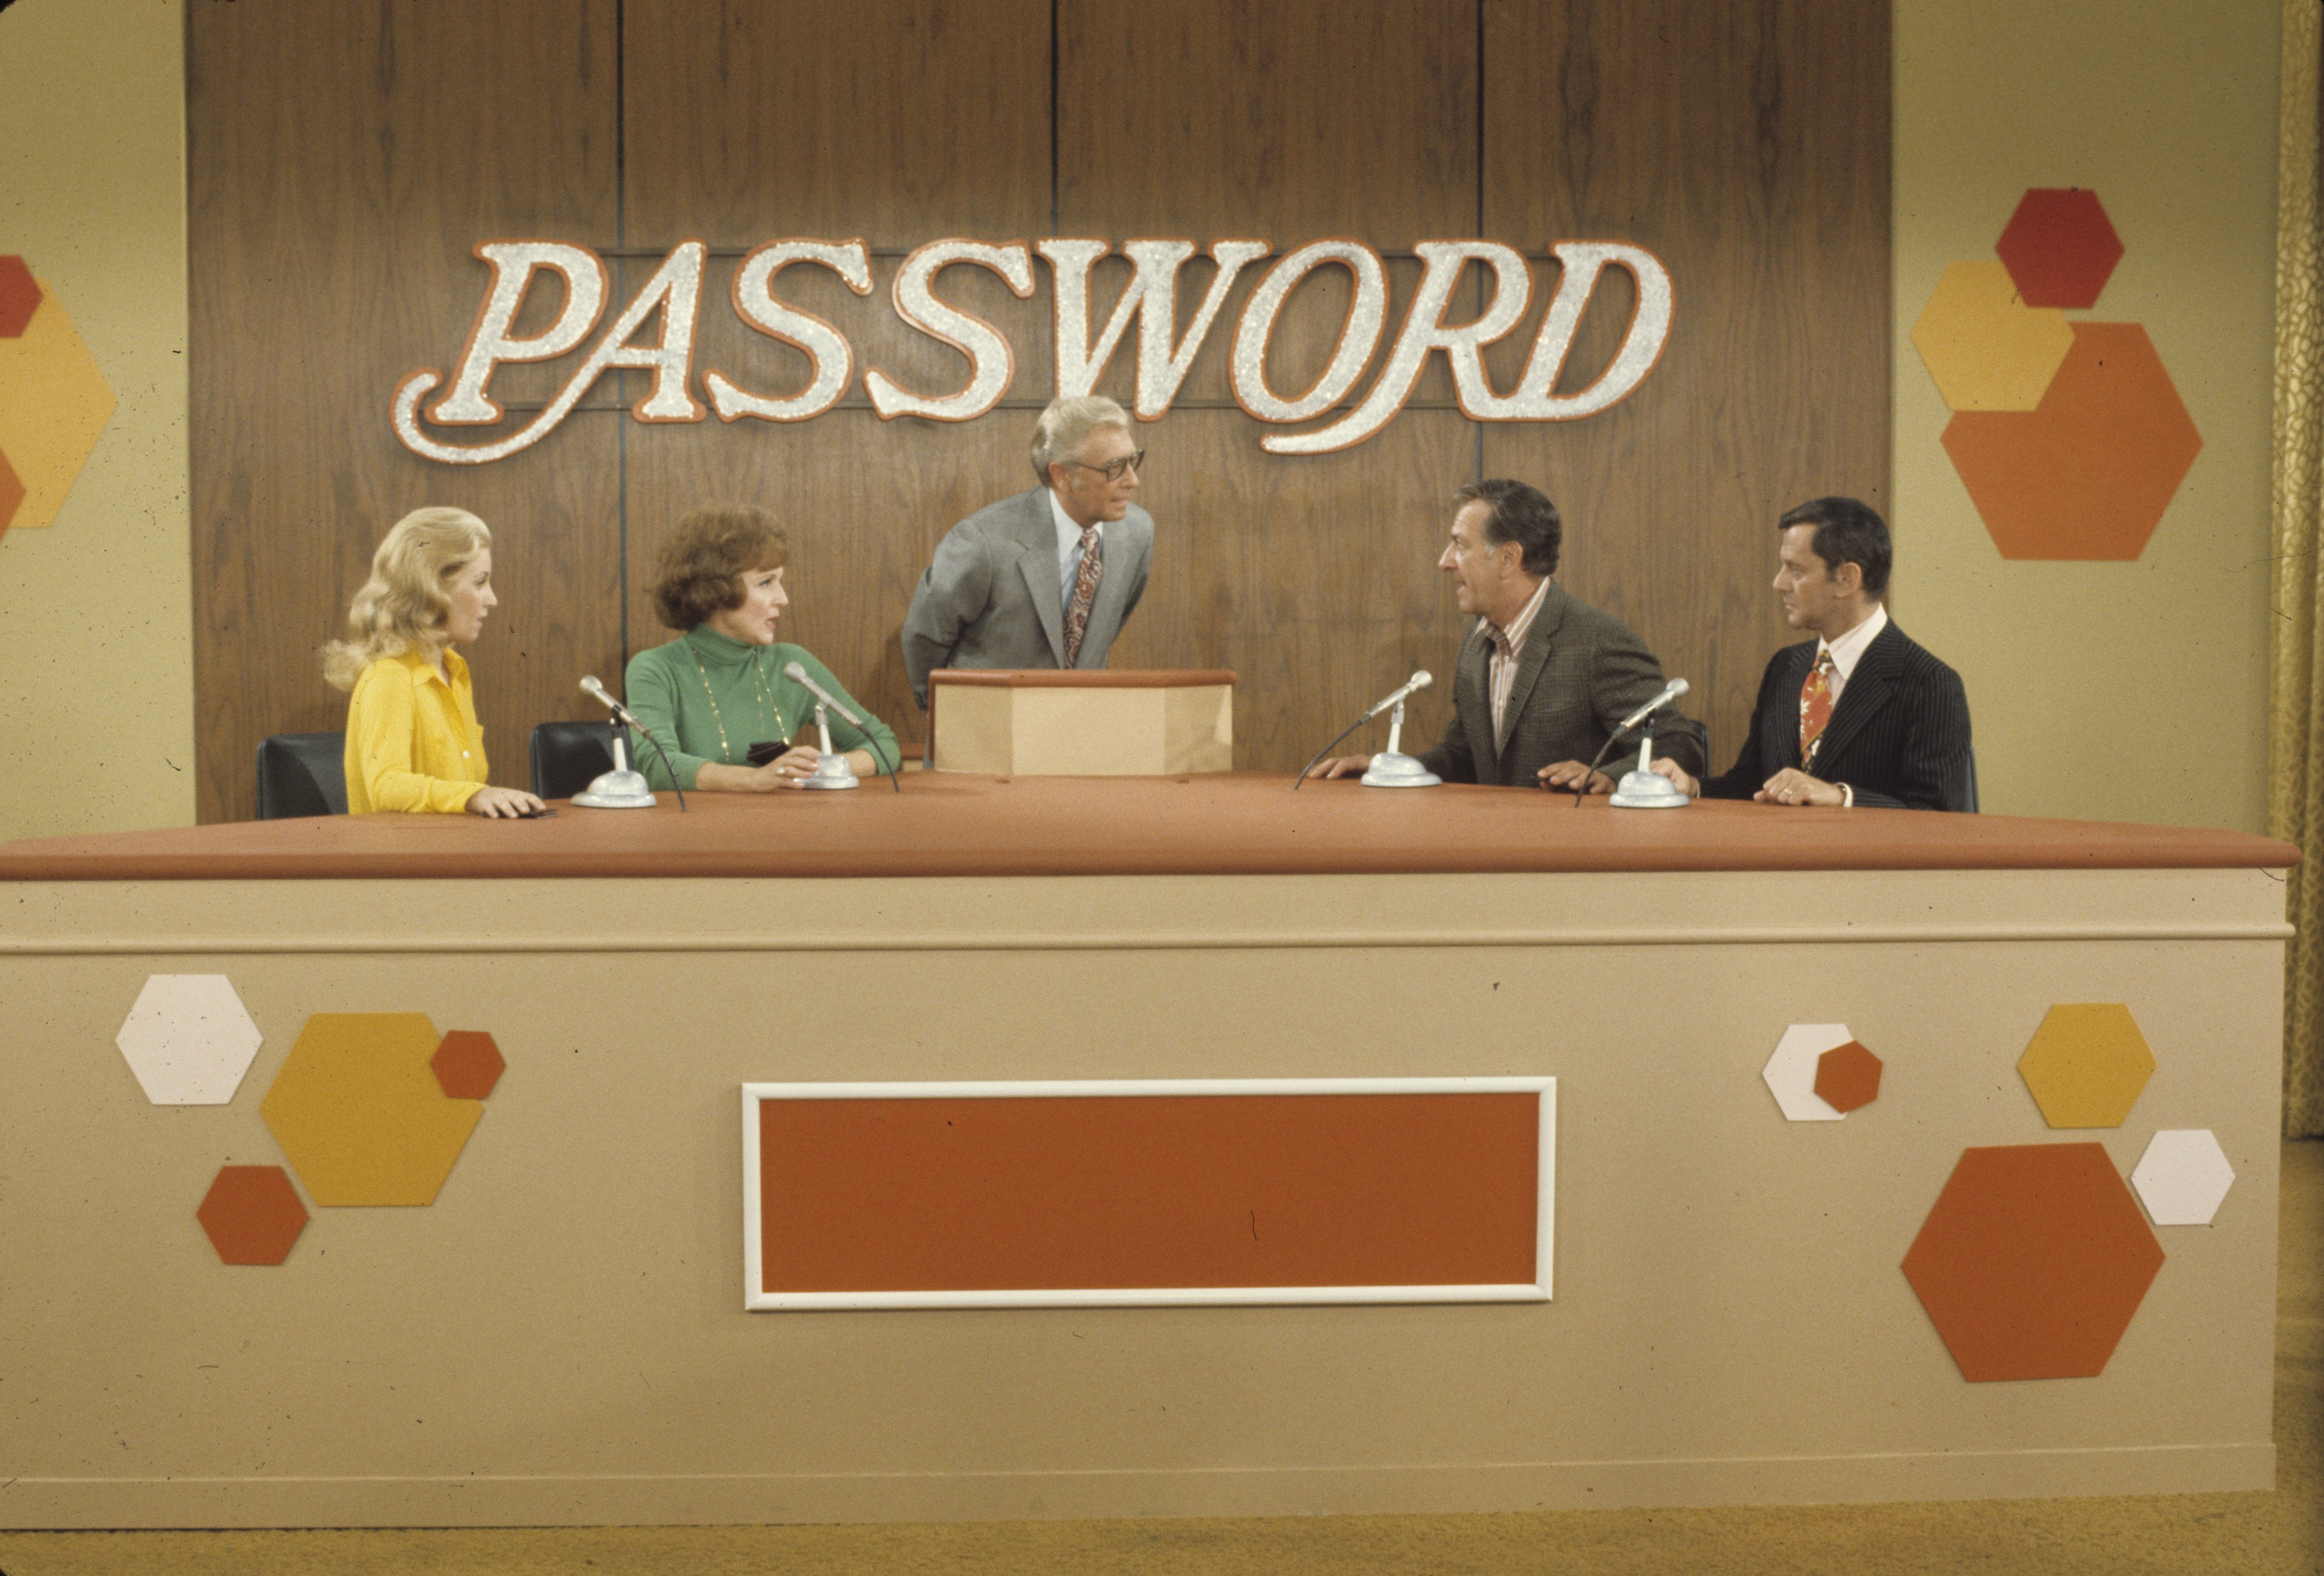 Betty White, Allen Ludden, Jack Klugman, Tony Randall während der Aufzeichnung der Spielshow "Password" am 1. Dezember 1972 ┃ Quelle: Getty Images